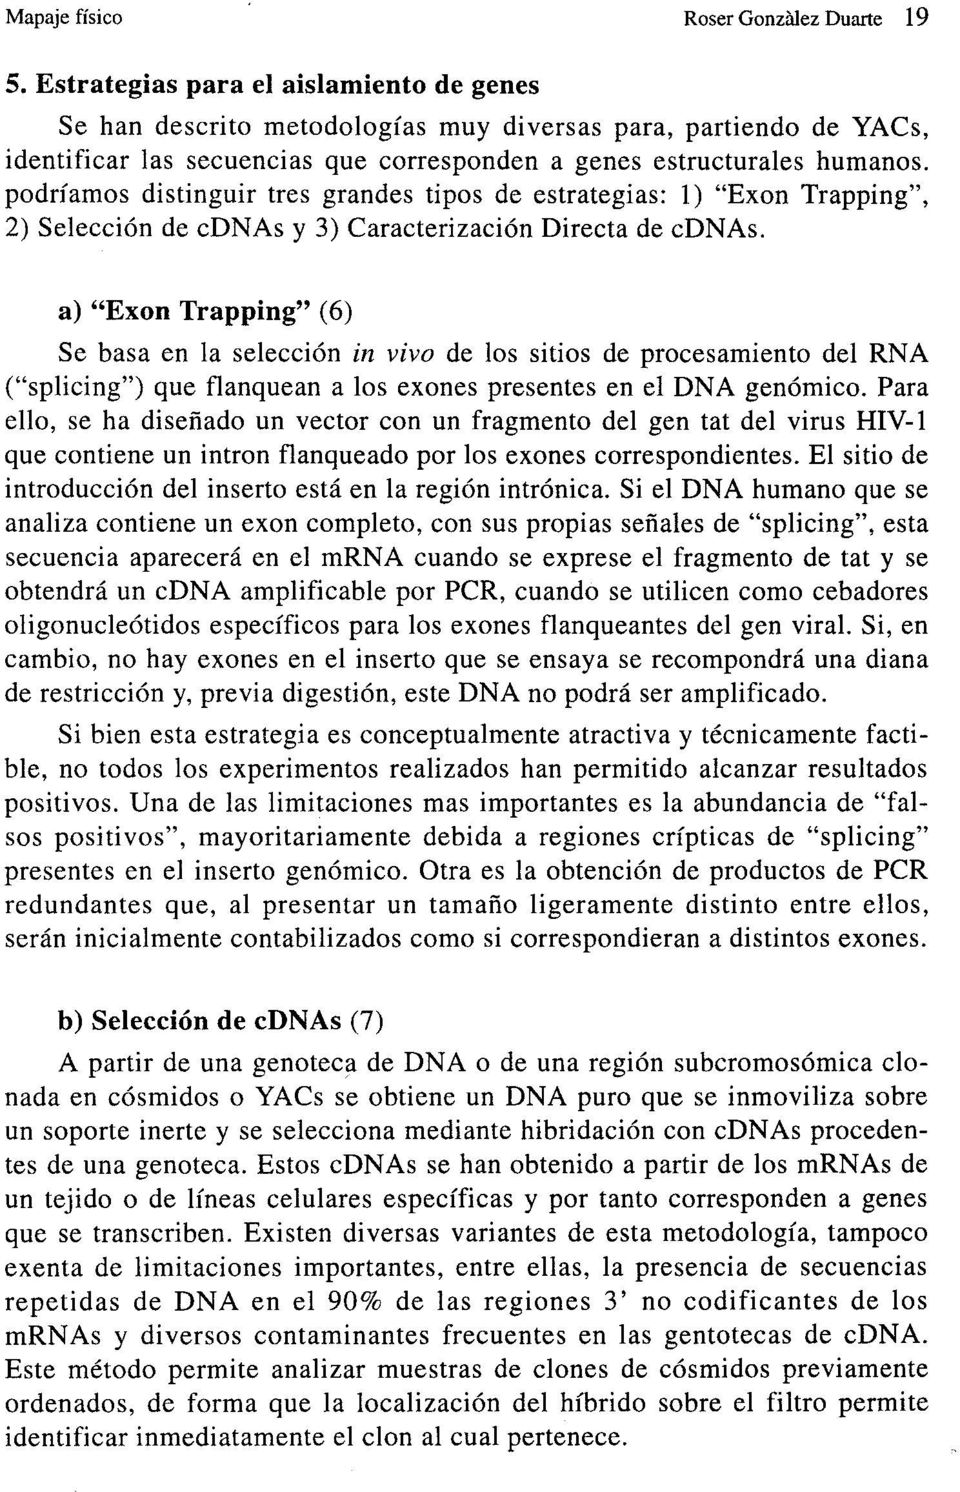 podríamos distinguir tres grandes tipos de estrategias: 1) "Exon Trapping", 2) Selección de cdnas y 3) Caracterización Directa de cdnas.